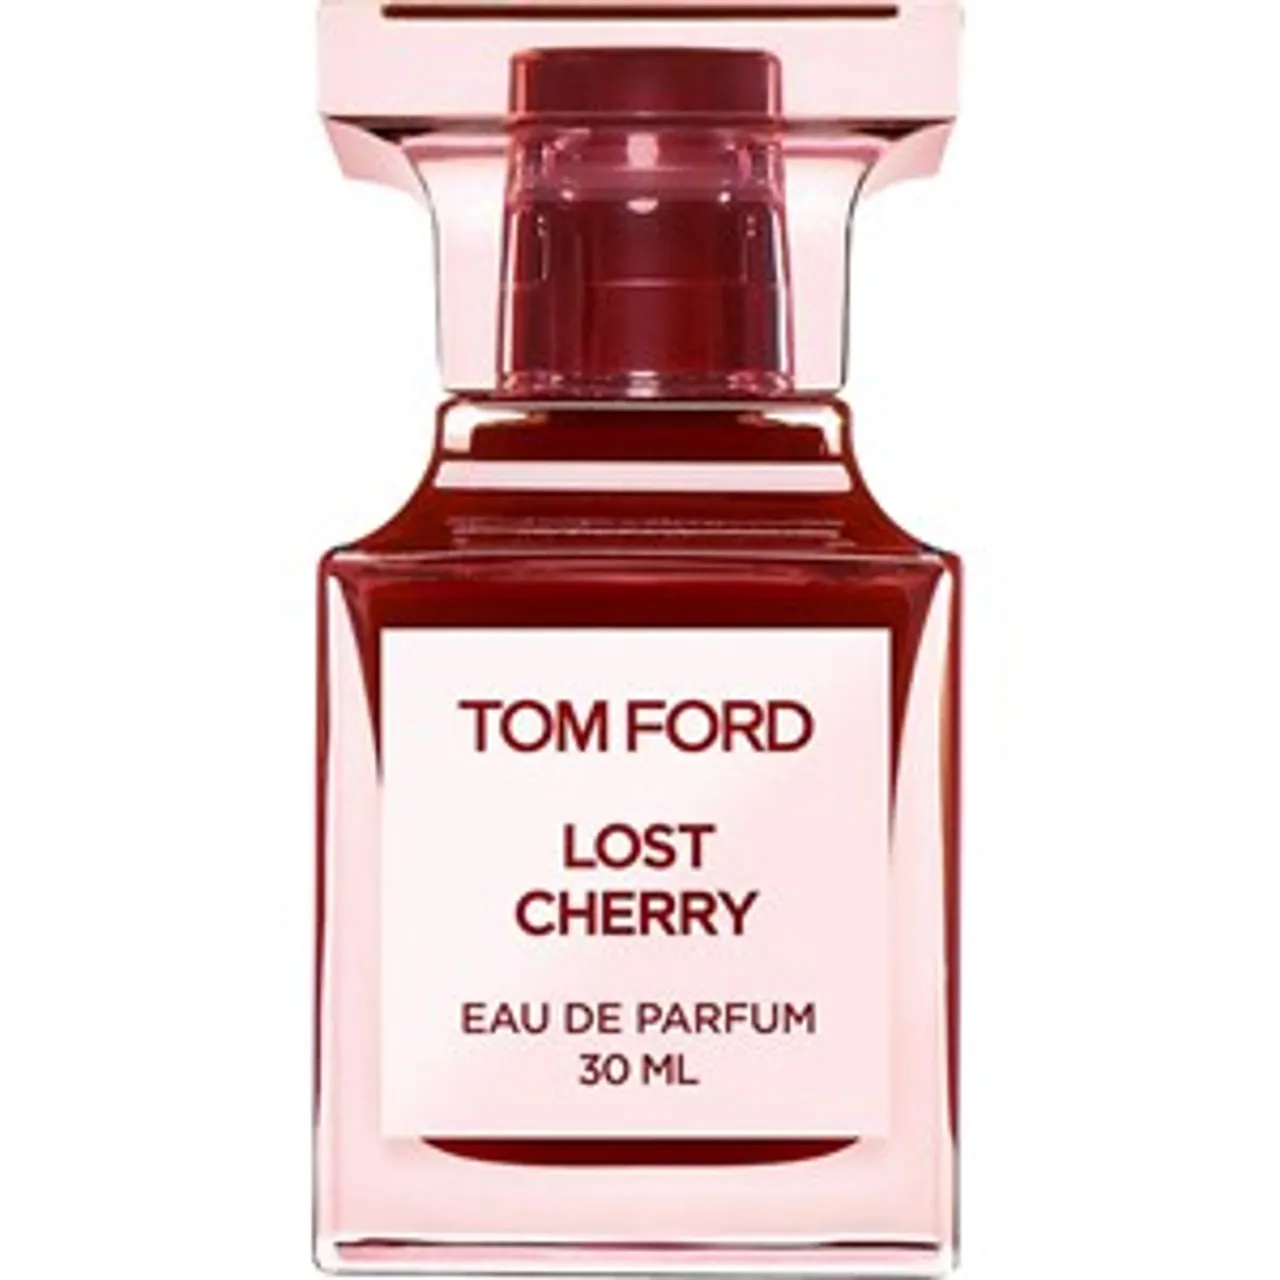 Tom Ford Eau de Parfum Spray 0 30 ml